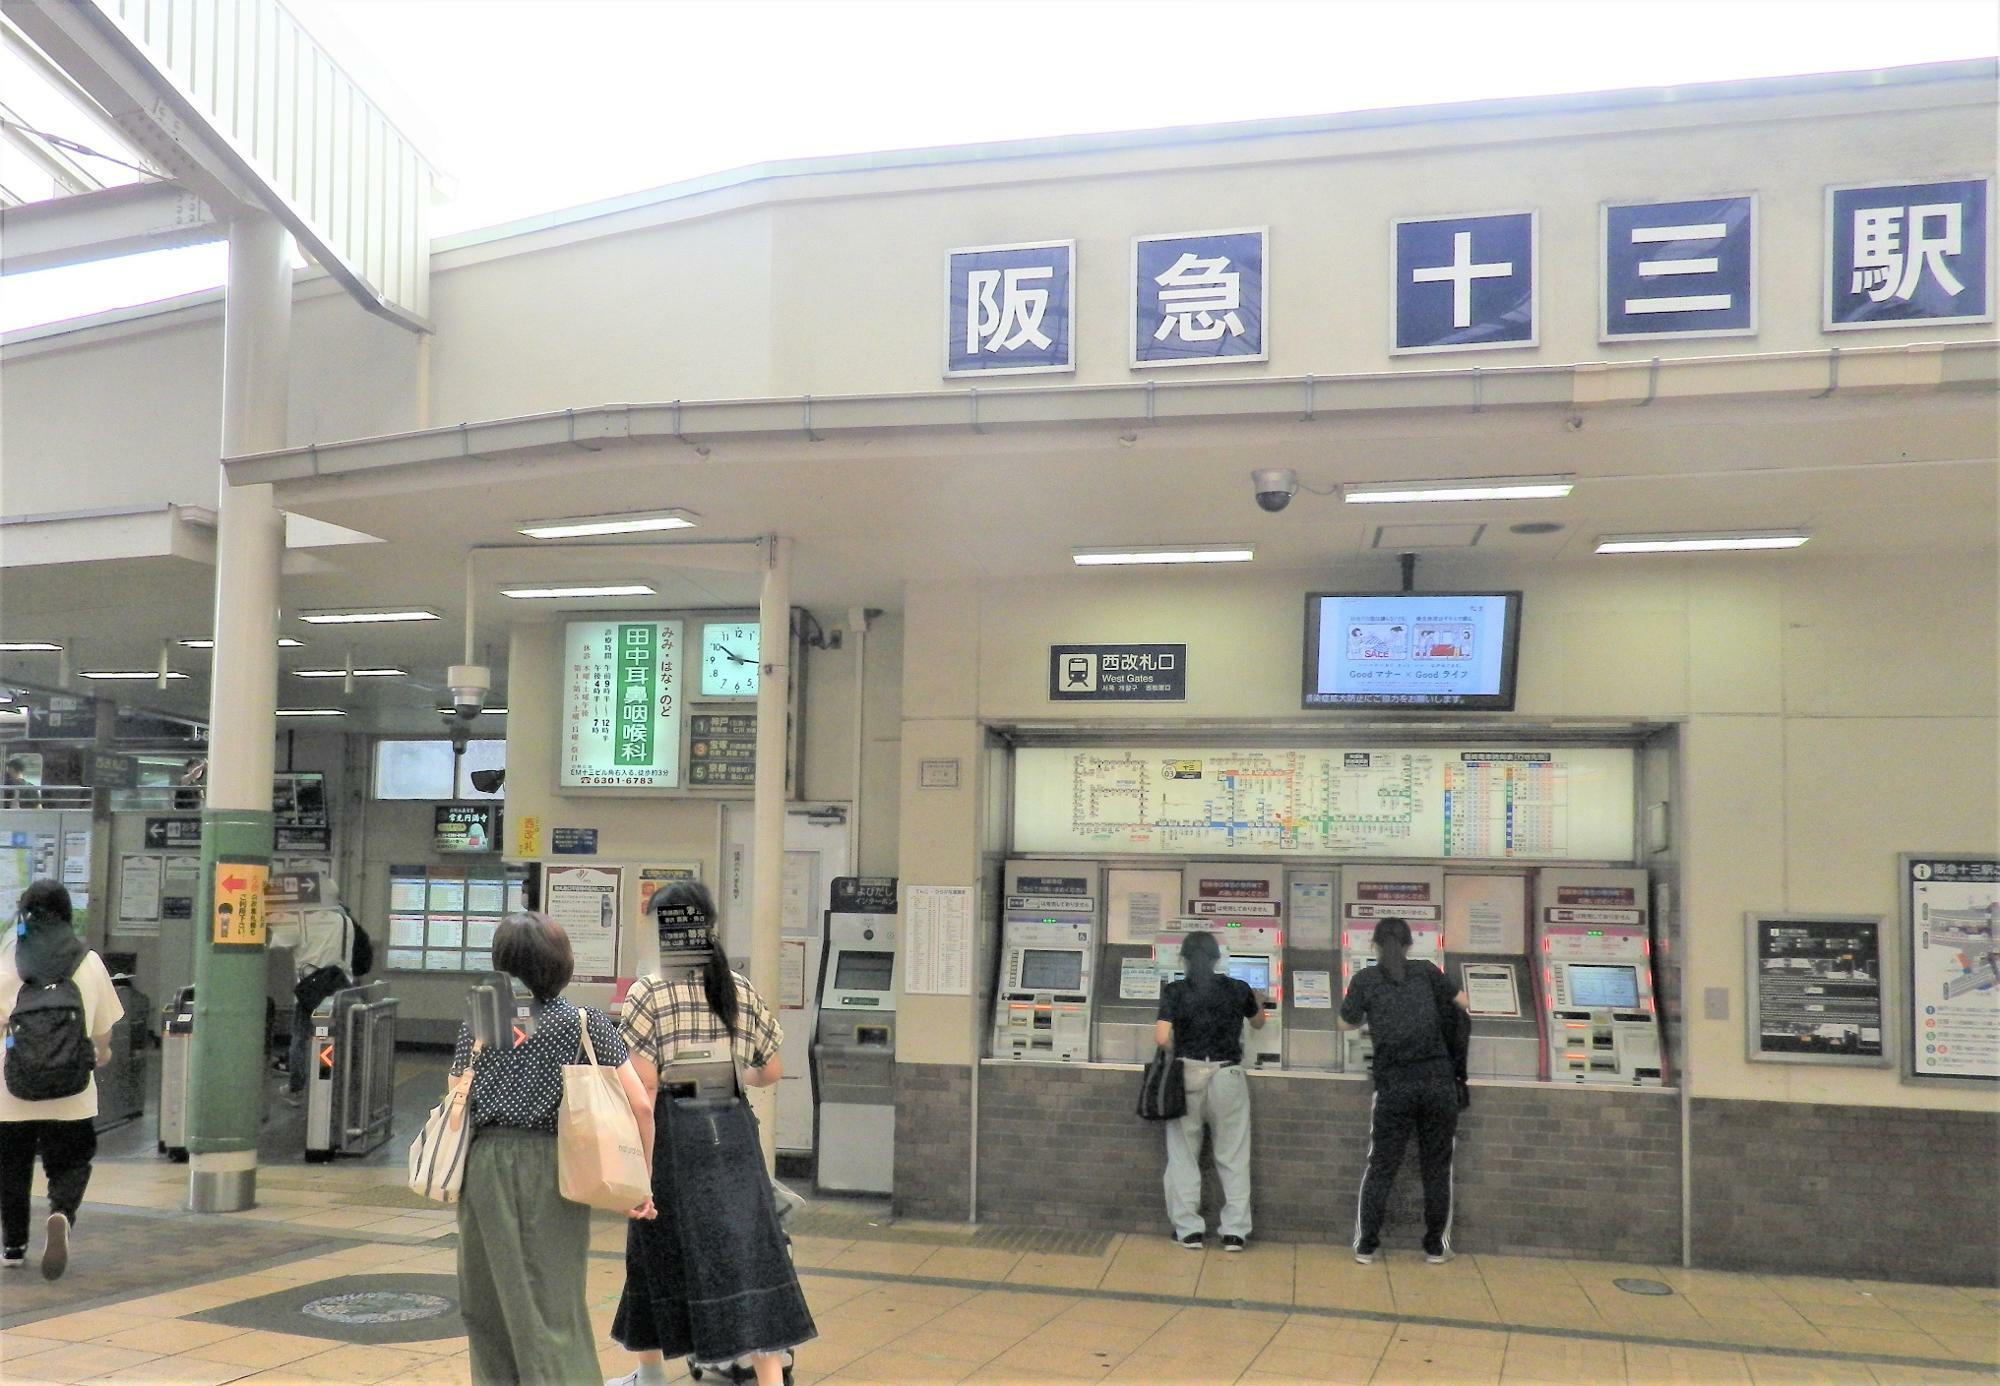 阪急電鉄十三駅西口改札のようすです。神戸線ホームに近い方の出口。